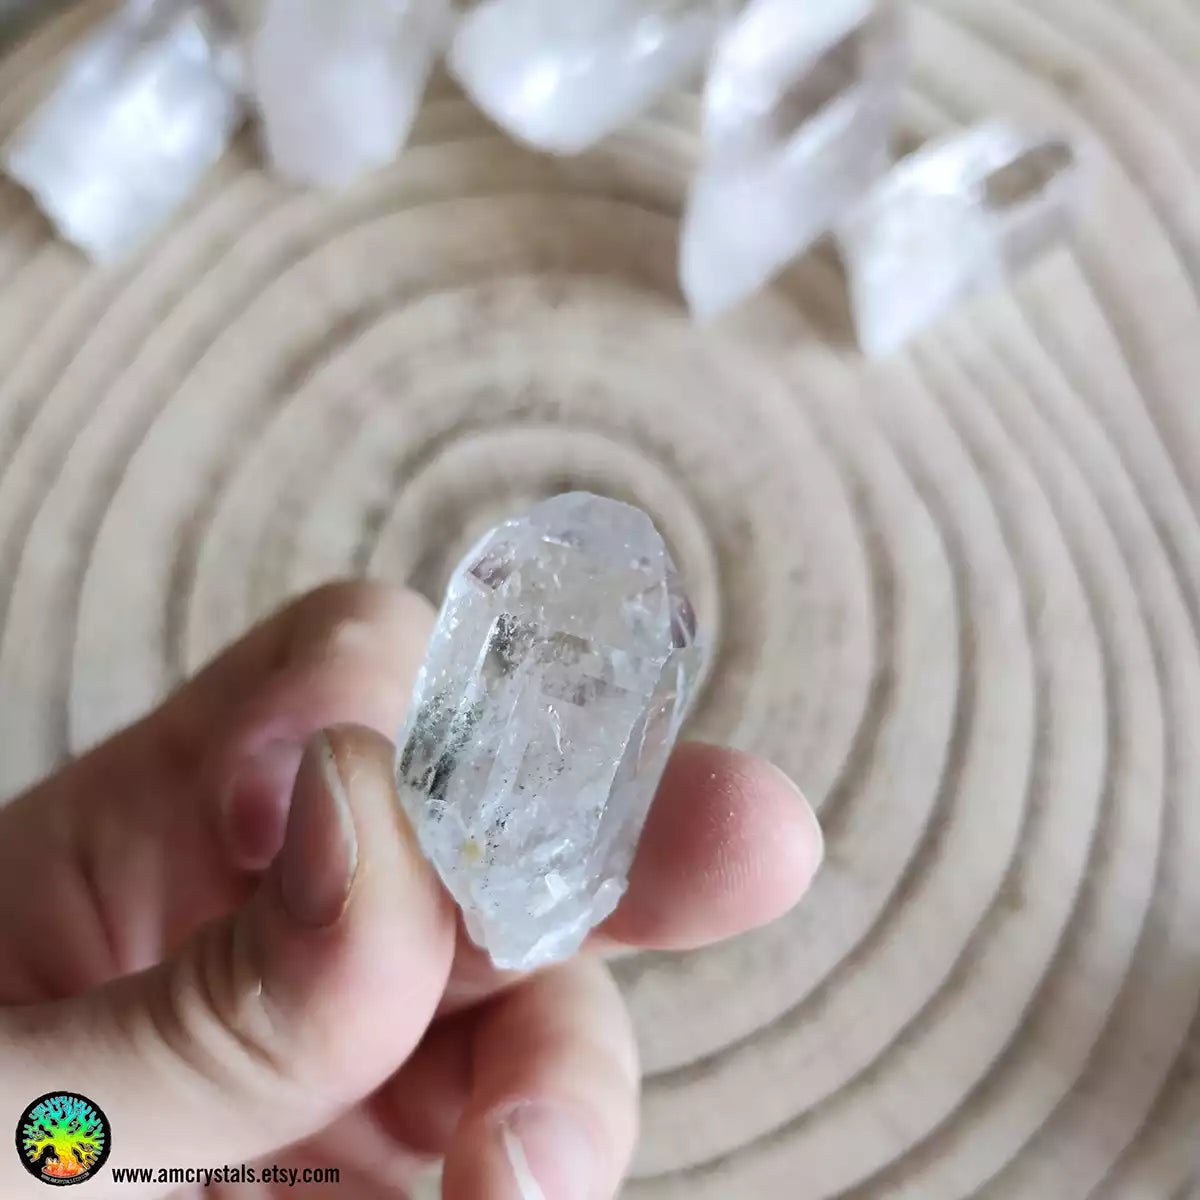 Cuarzo transparente con inclusiones de Clorita nr.6 - Cristales Anima Mundi